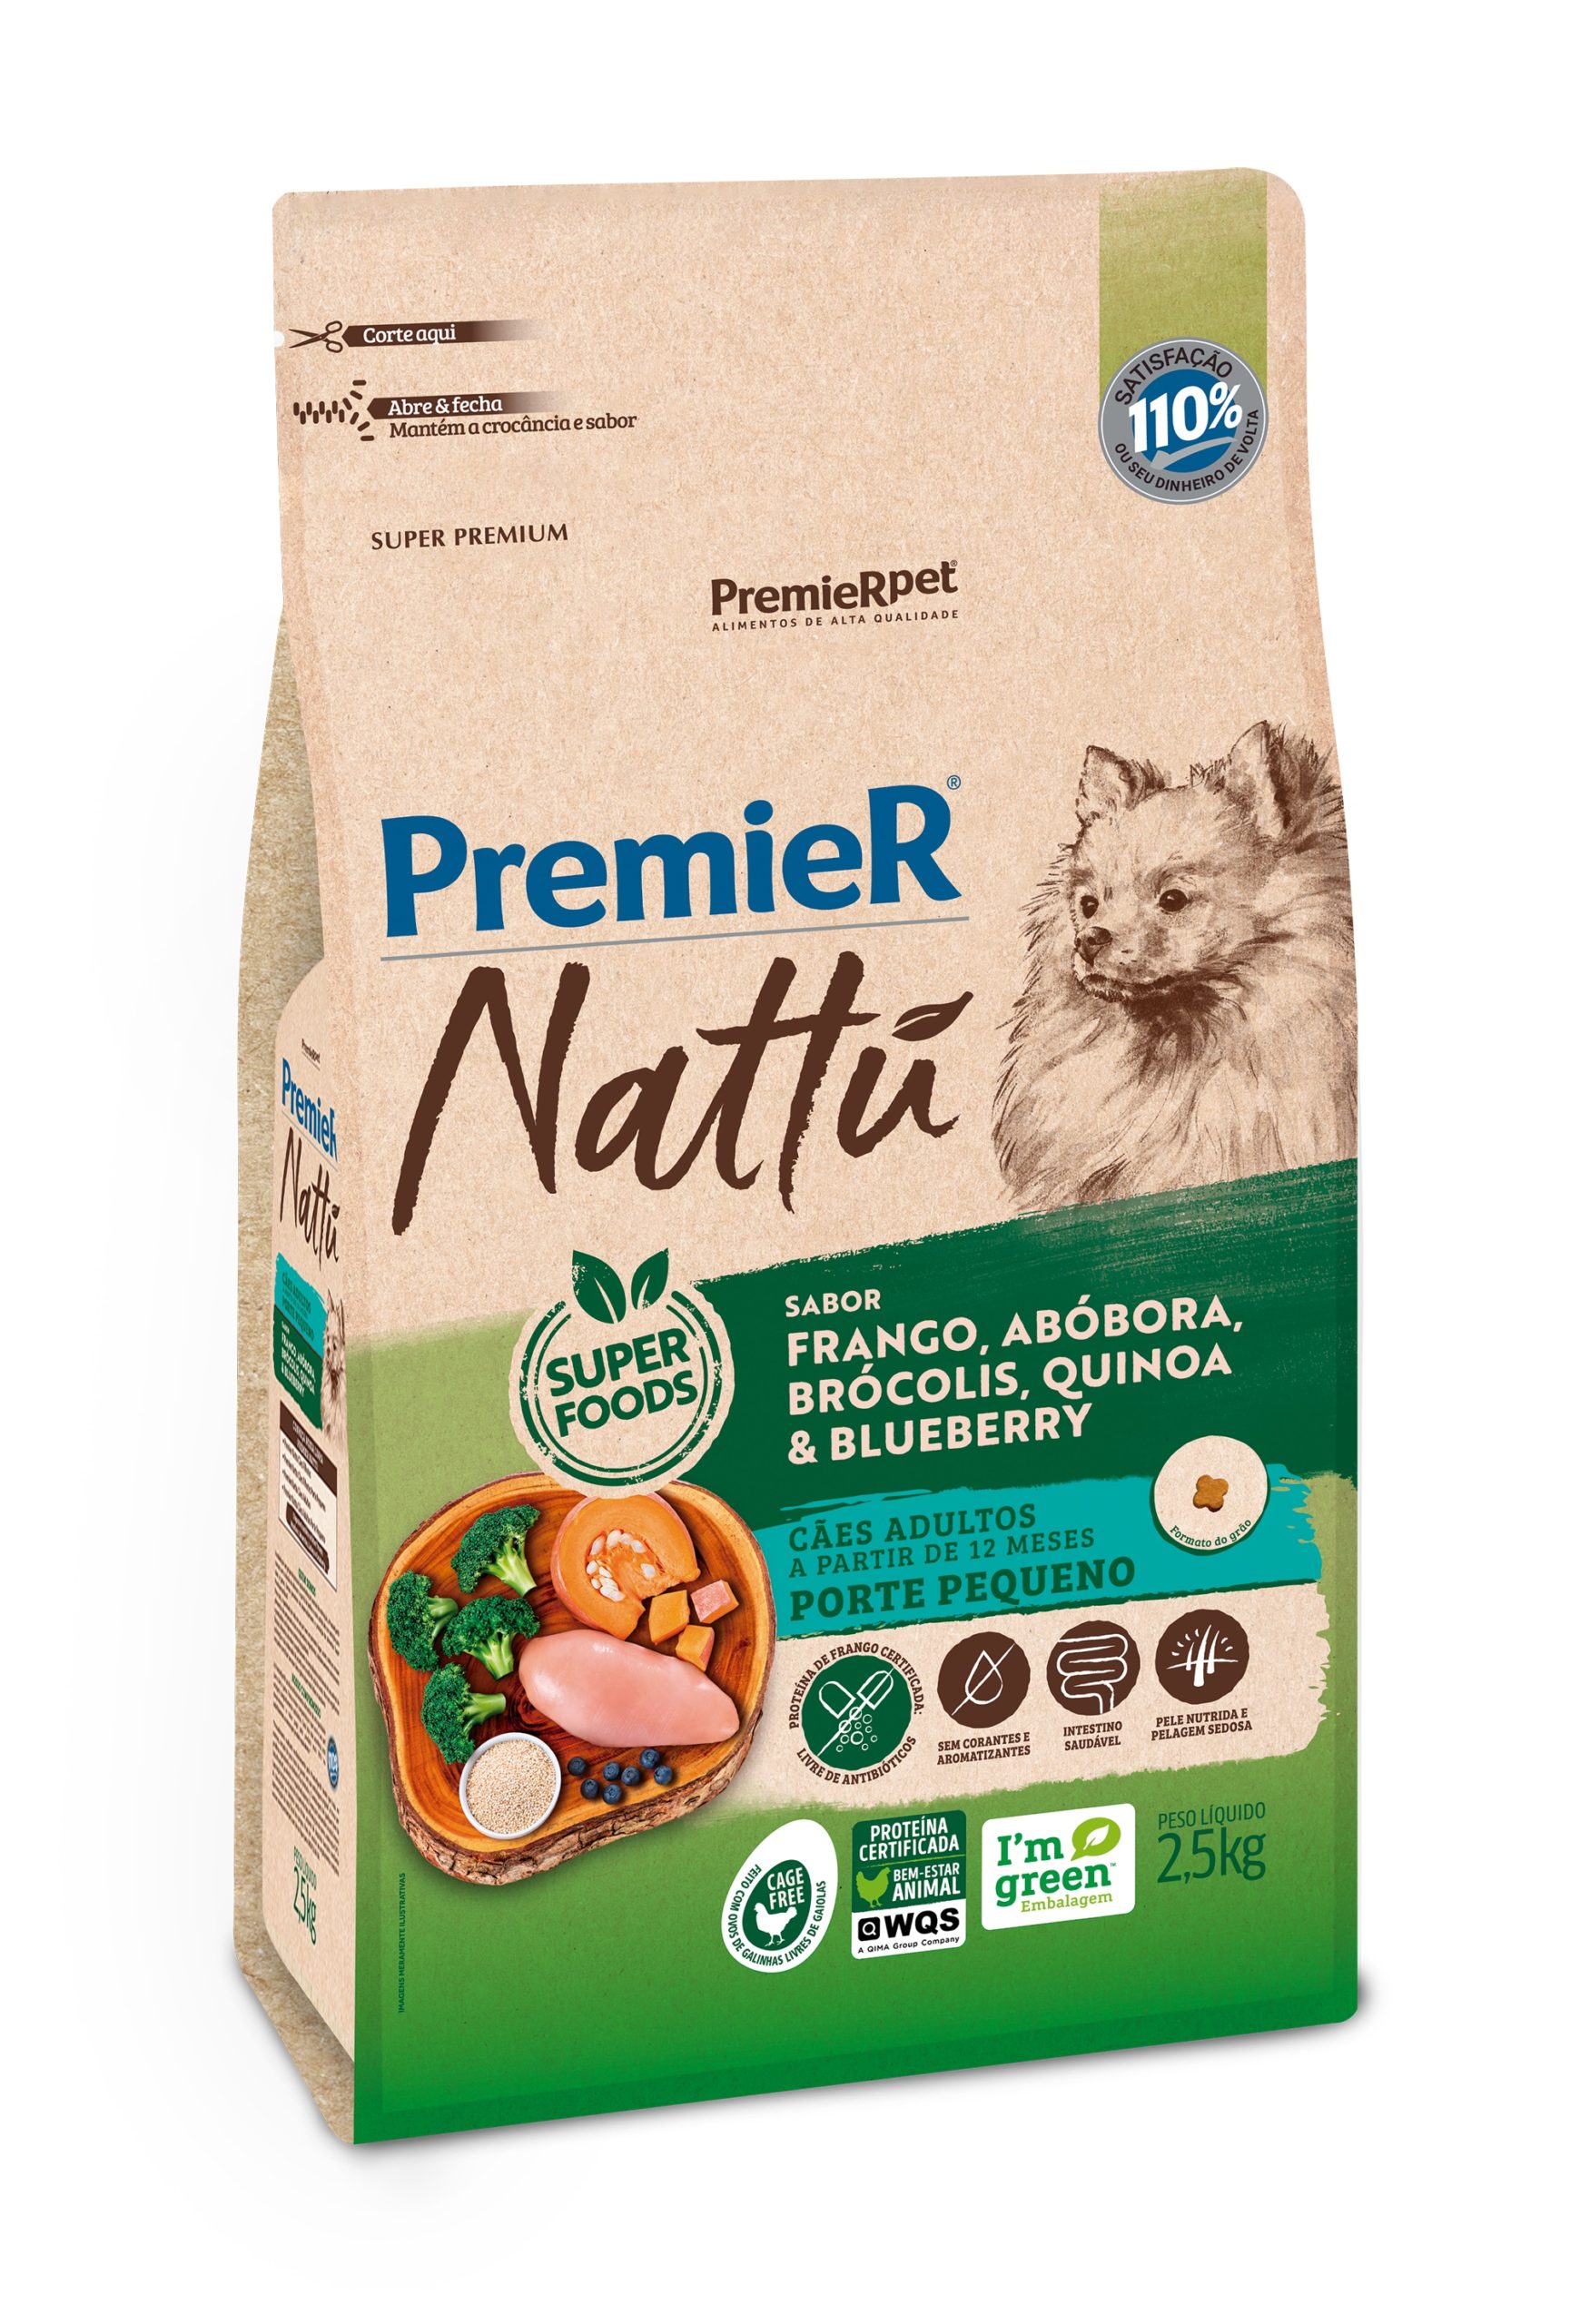 PremieRpet lança nova linha de alimentos saudáveis e sustentáveis para cães